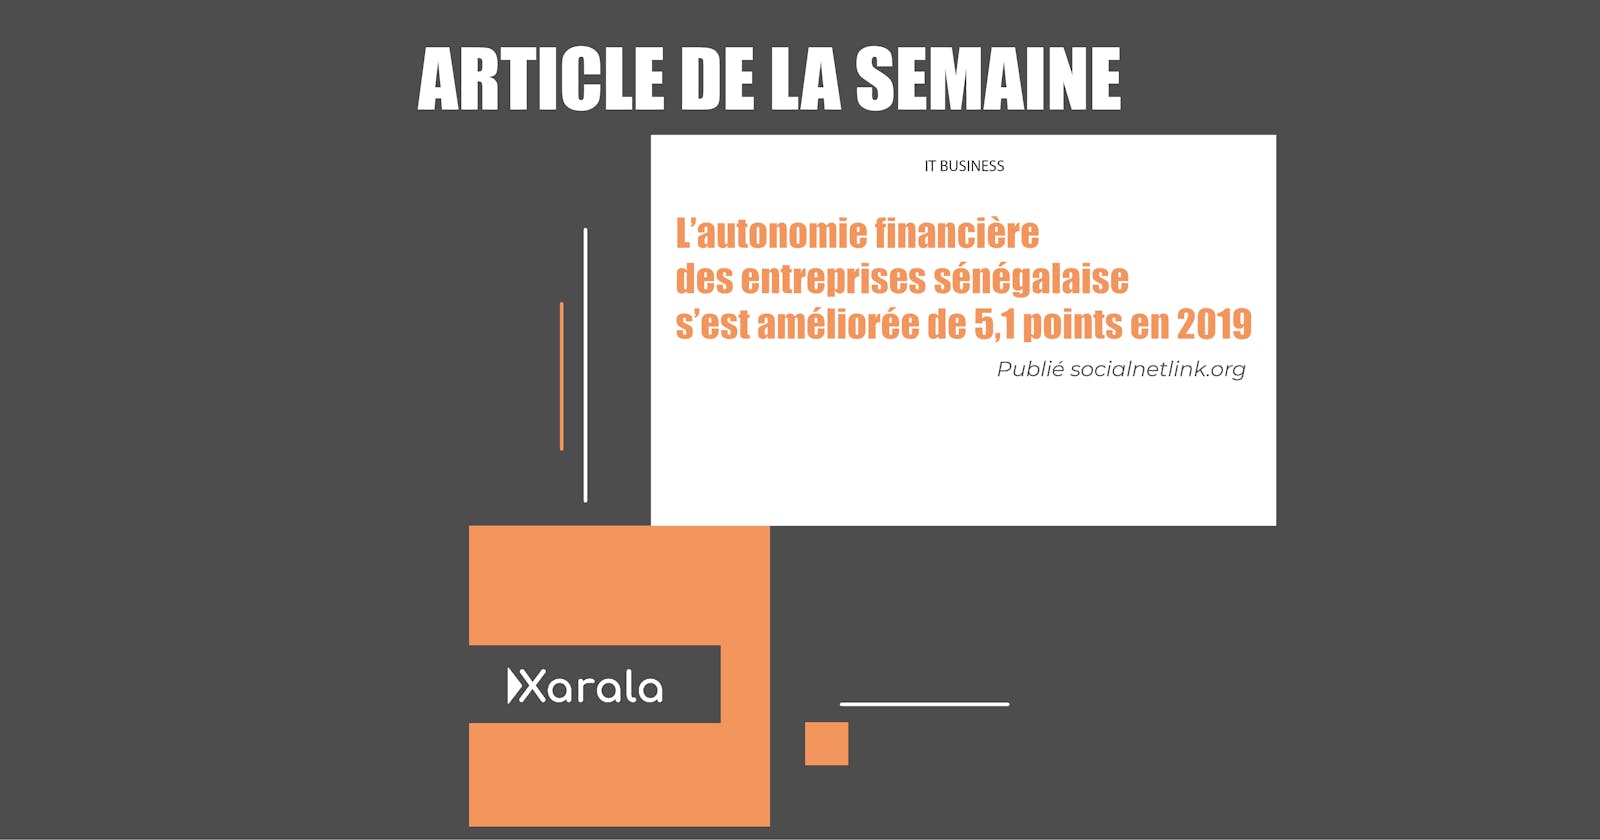 L’autonomie financière des entreprises sénégalaise s’est améliorée de 5,1 points en 2019